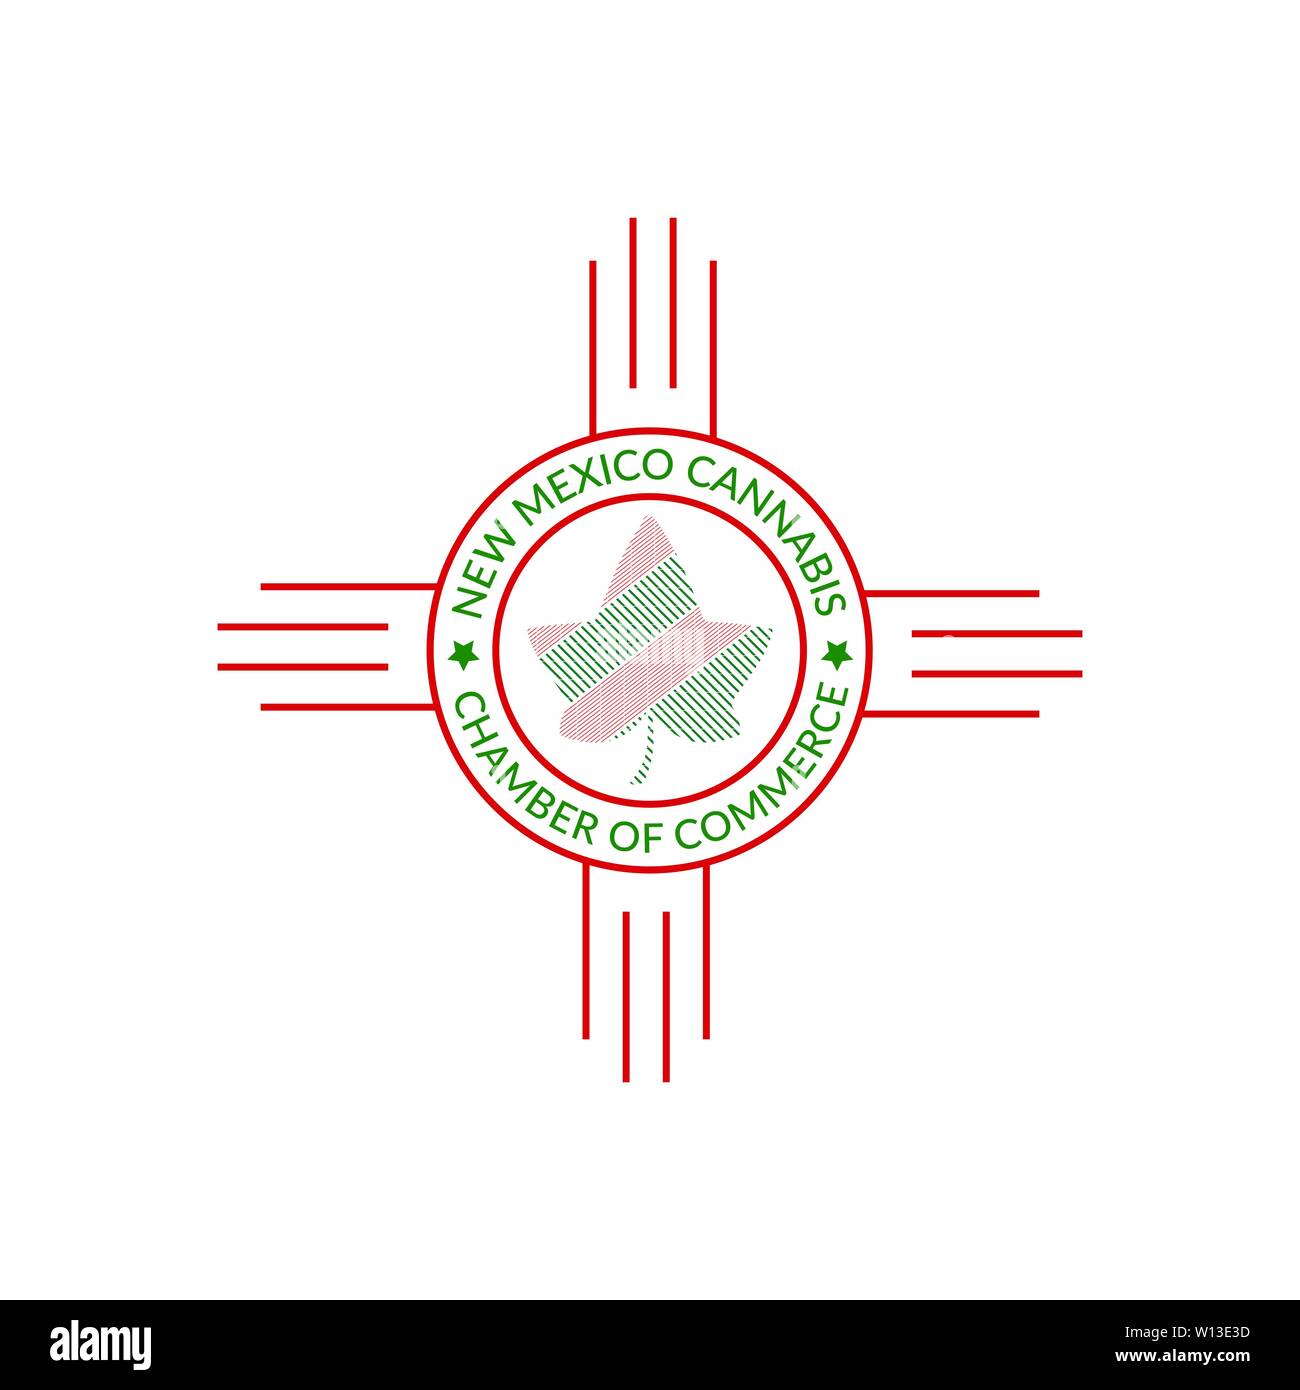 Feuille de Cannabis avec drapeau mexicain icône concevoir Illustration de Vecteur